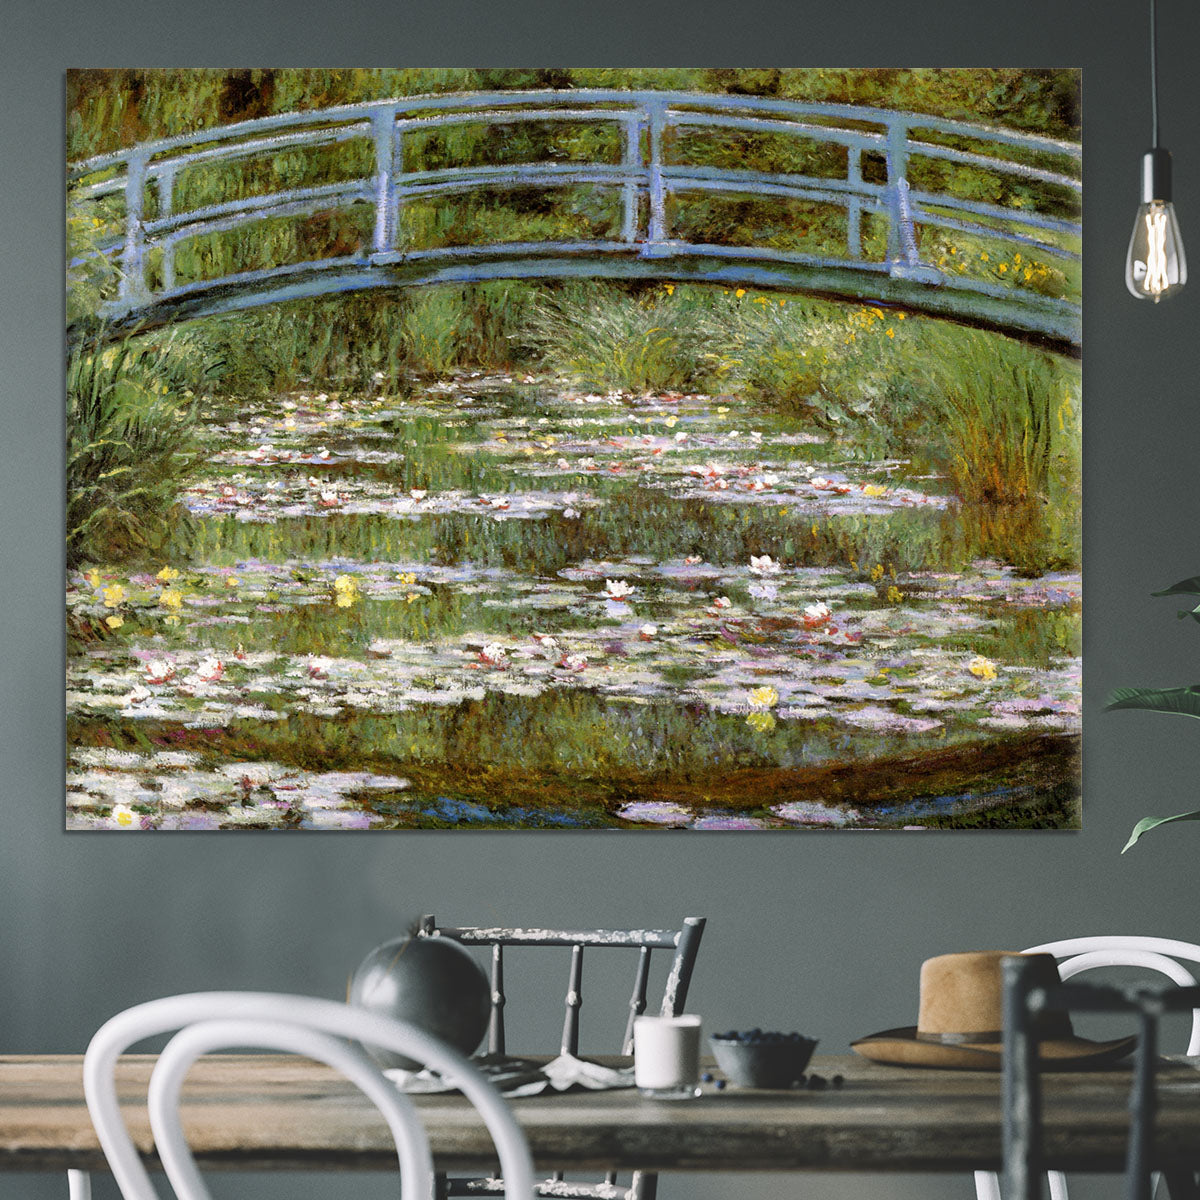 Le Pont Japonais by Monet Canvas Print or Poster - Canvas Art Rocks - 3